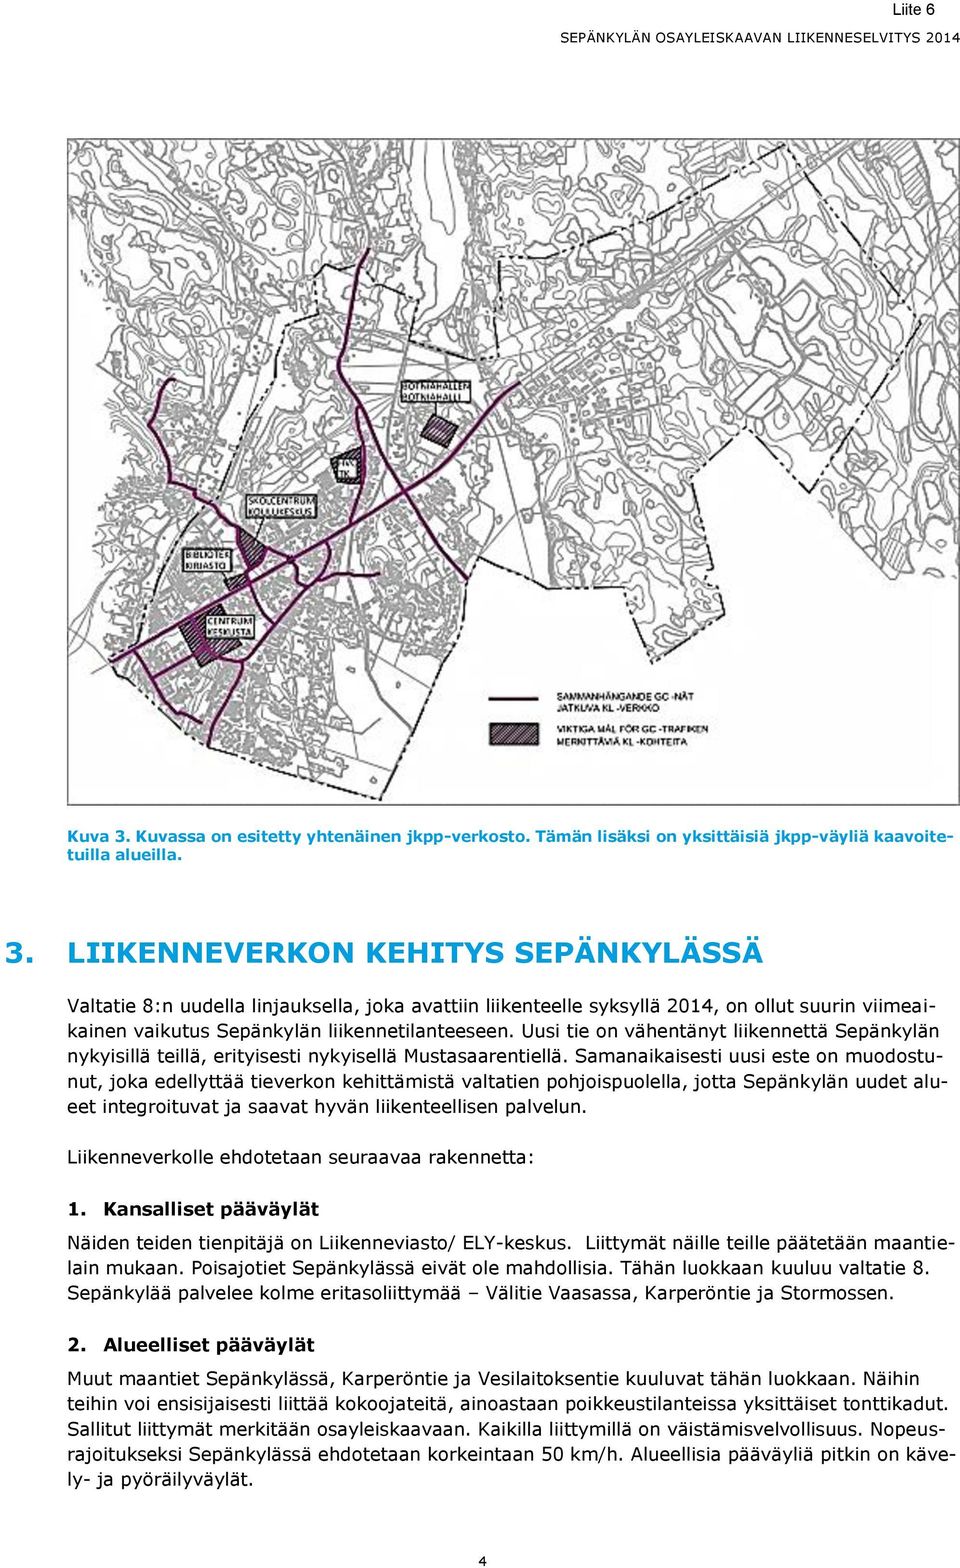 Samanaikaisesti uusi este on muodostunut, joka edellyttää tieverkon kehittämistä valtatien pohjoispuolella, jotta Sepänkylän uudet alueet integroituvat ja saavat hyvän liikenteellisen palvelun.